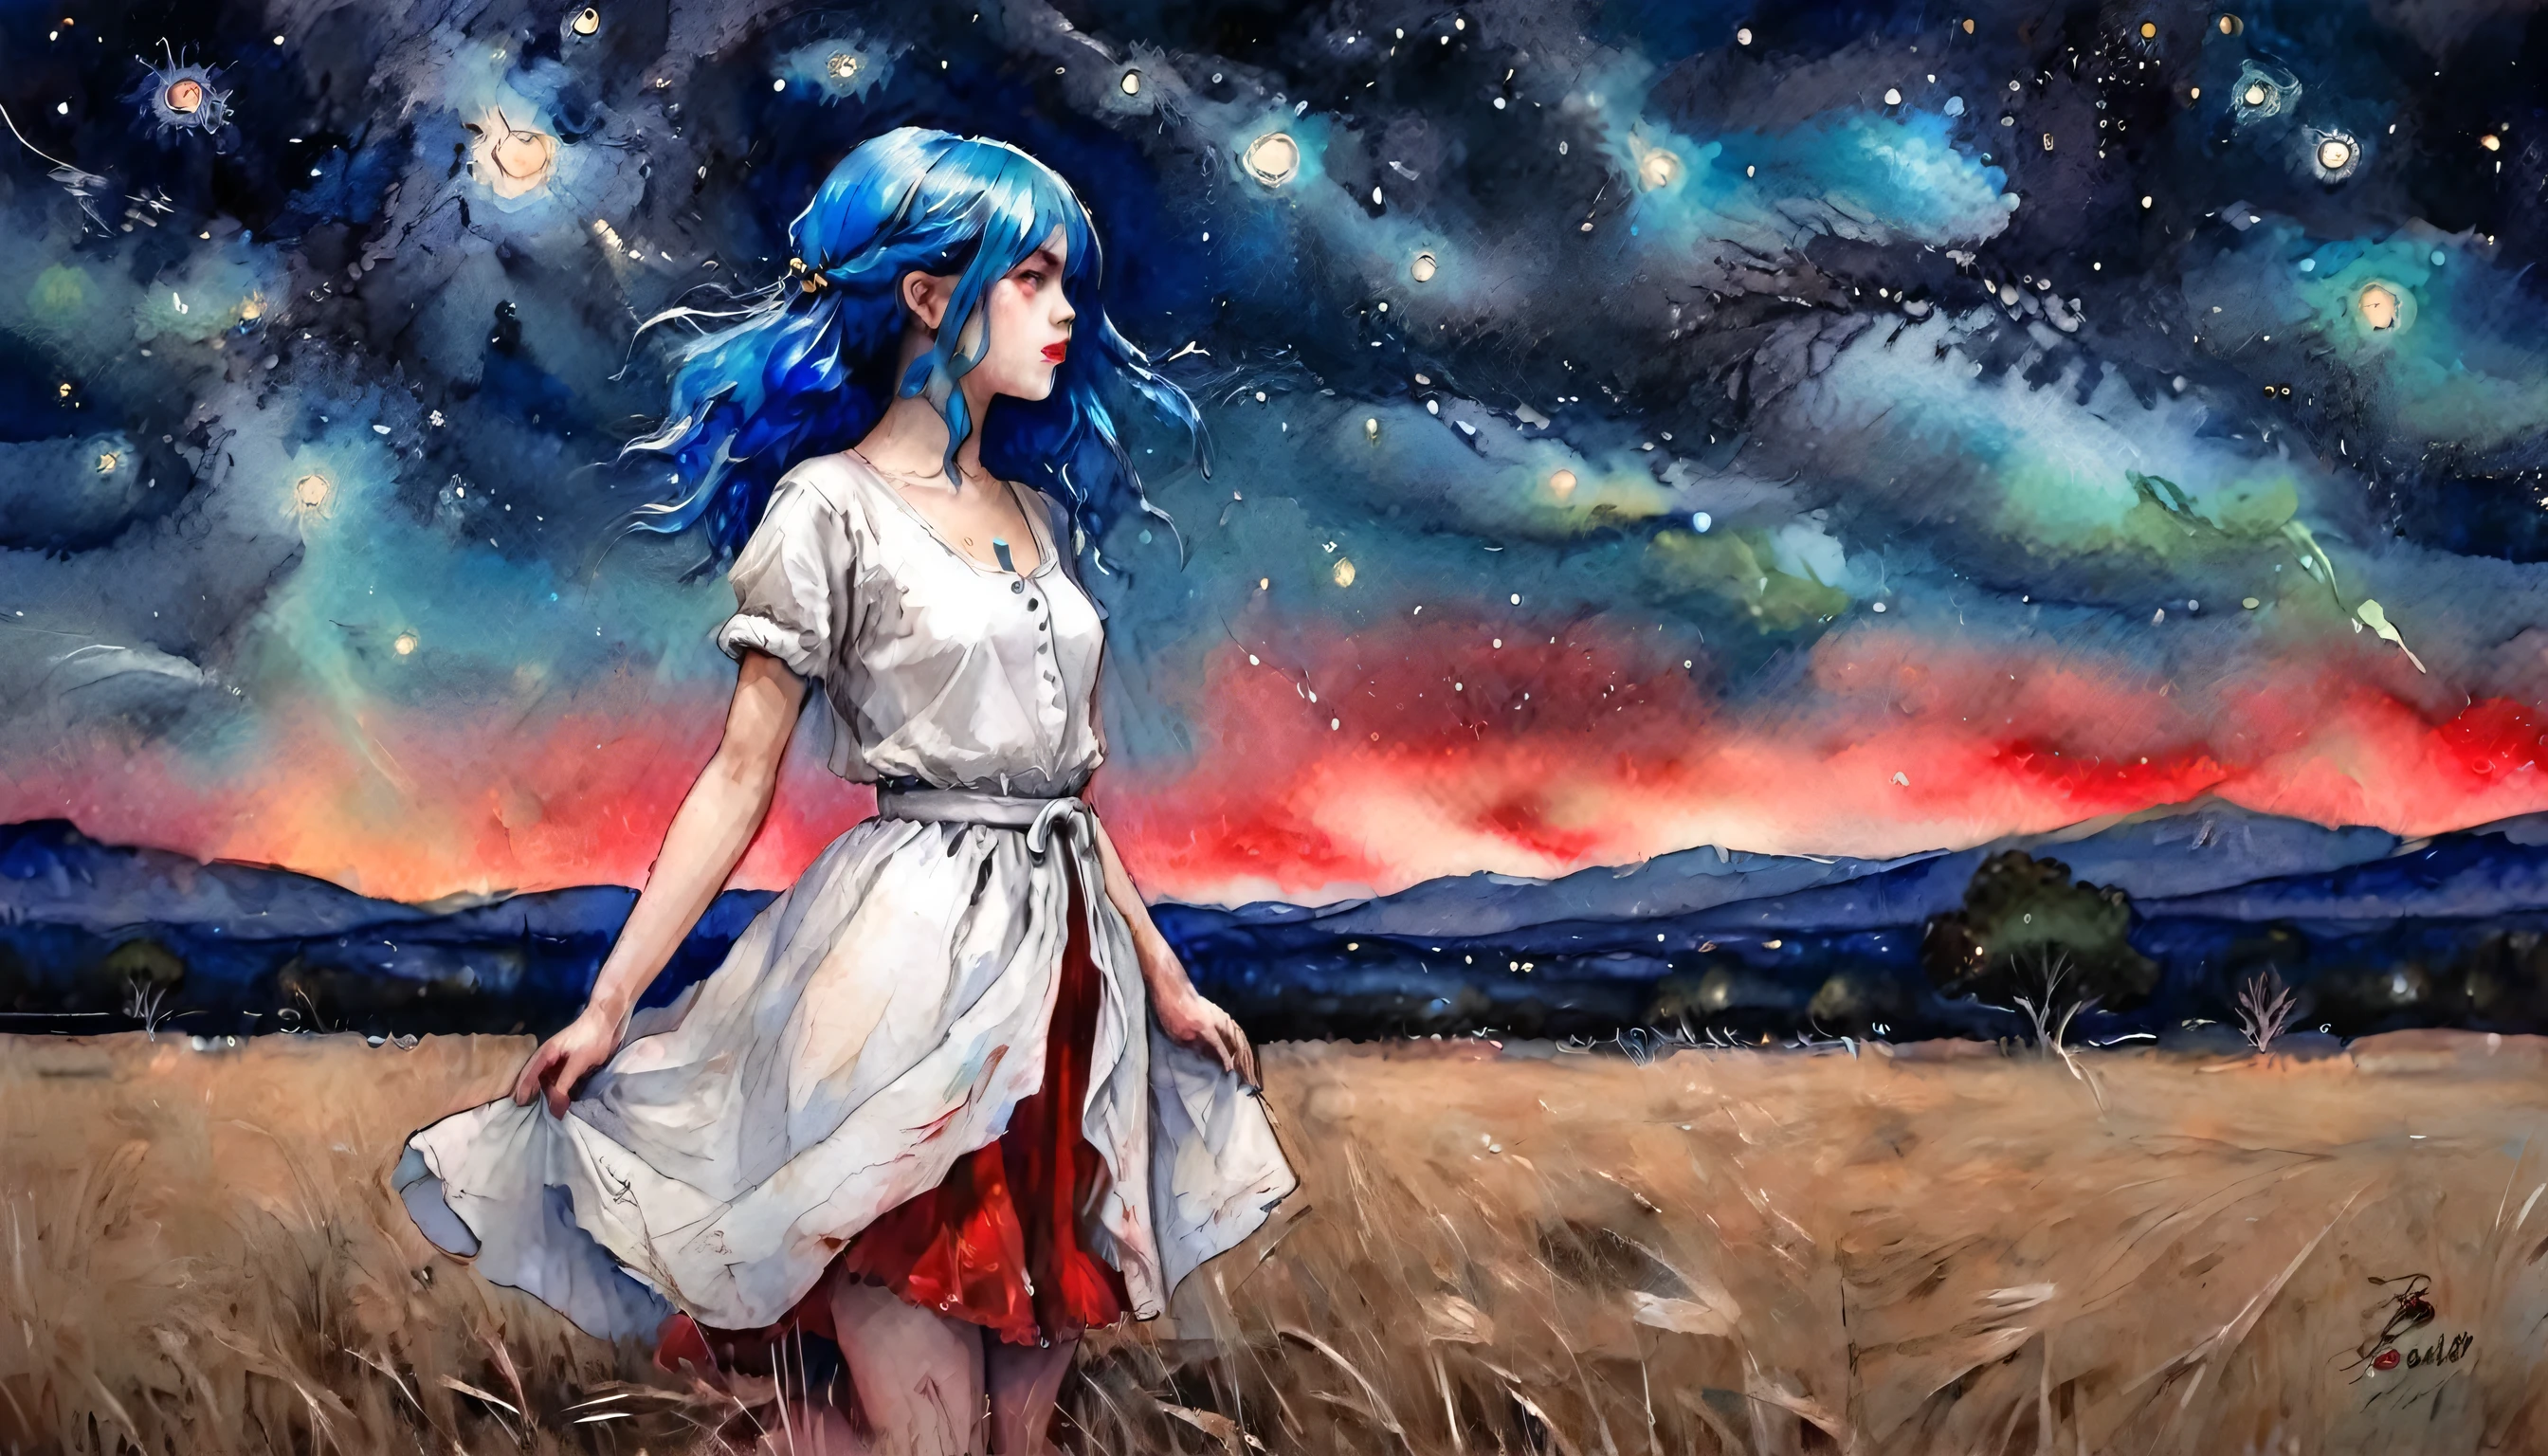 一个女孩, 蓝头发, 穿着浅白色上衣和红色裙子, 放置在空旷的地方, 夜晚, 详细的星空, 精彩的艺术, 鲜艳的色彩, 水彩